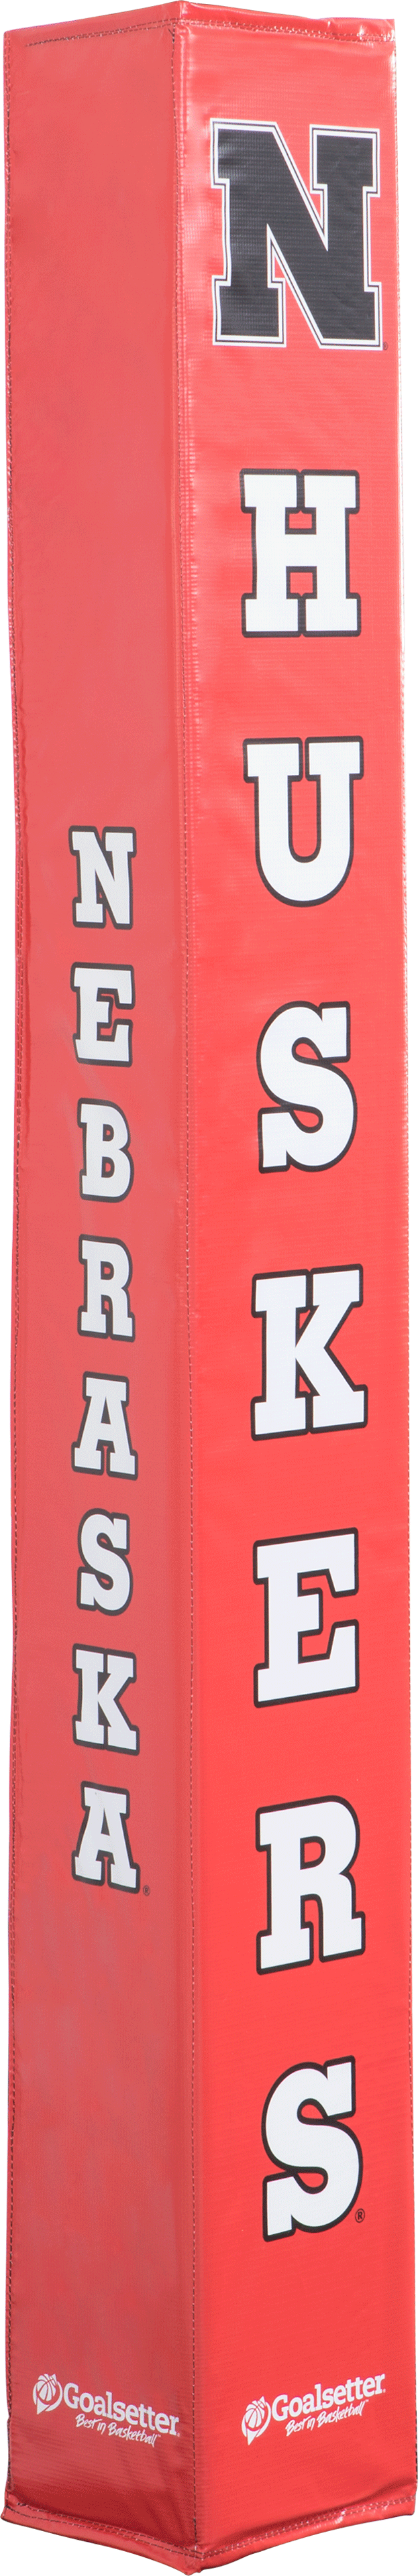 Goalsetter Basketball - Collegiate Basketball Pole Pad - Nebraska Cornhuskers (Red)